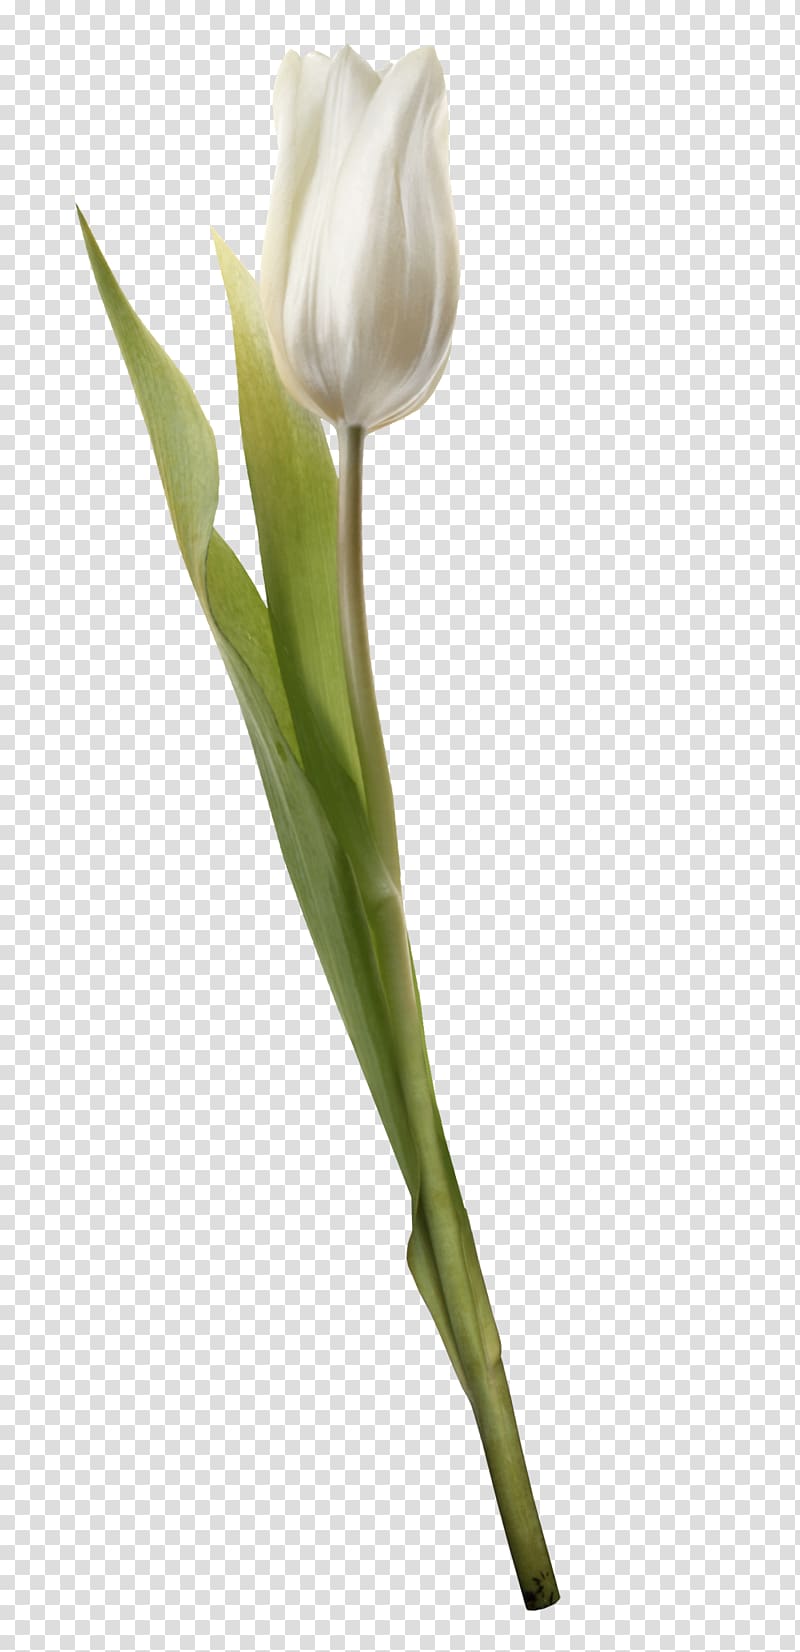 Cut flowers Tulip Plant Liliaceae, tulip transparent background PNG clipart